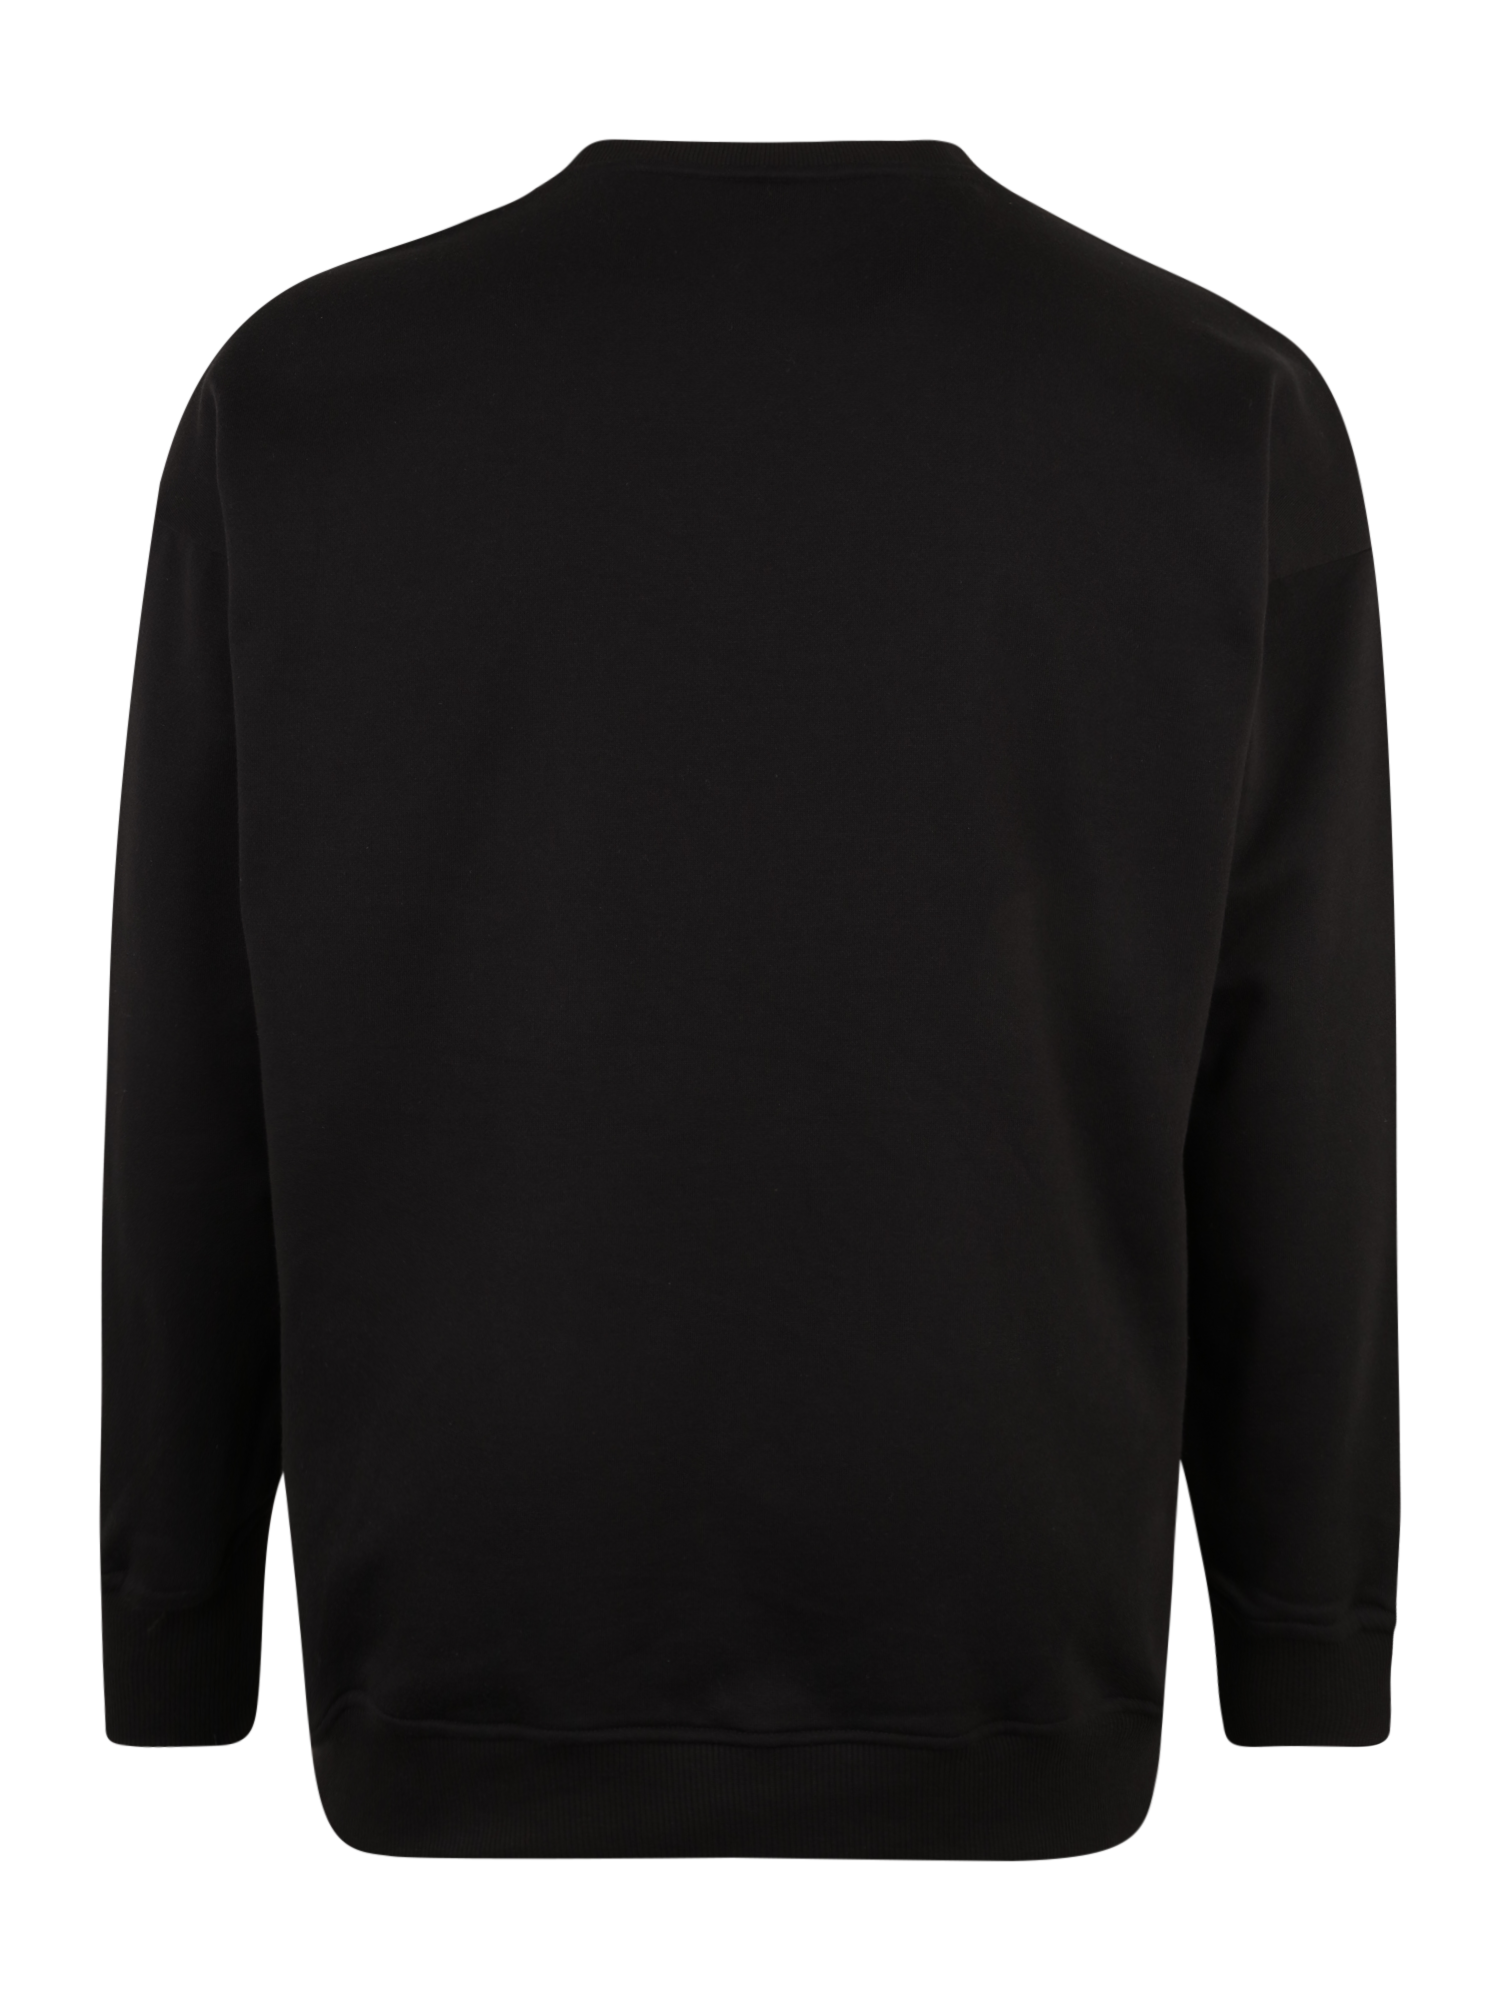 Odzież Mężczyźni Urban Classics Bluzka sportowa w kolorze Czarnym 